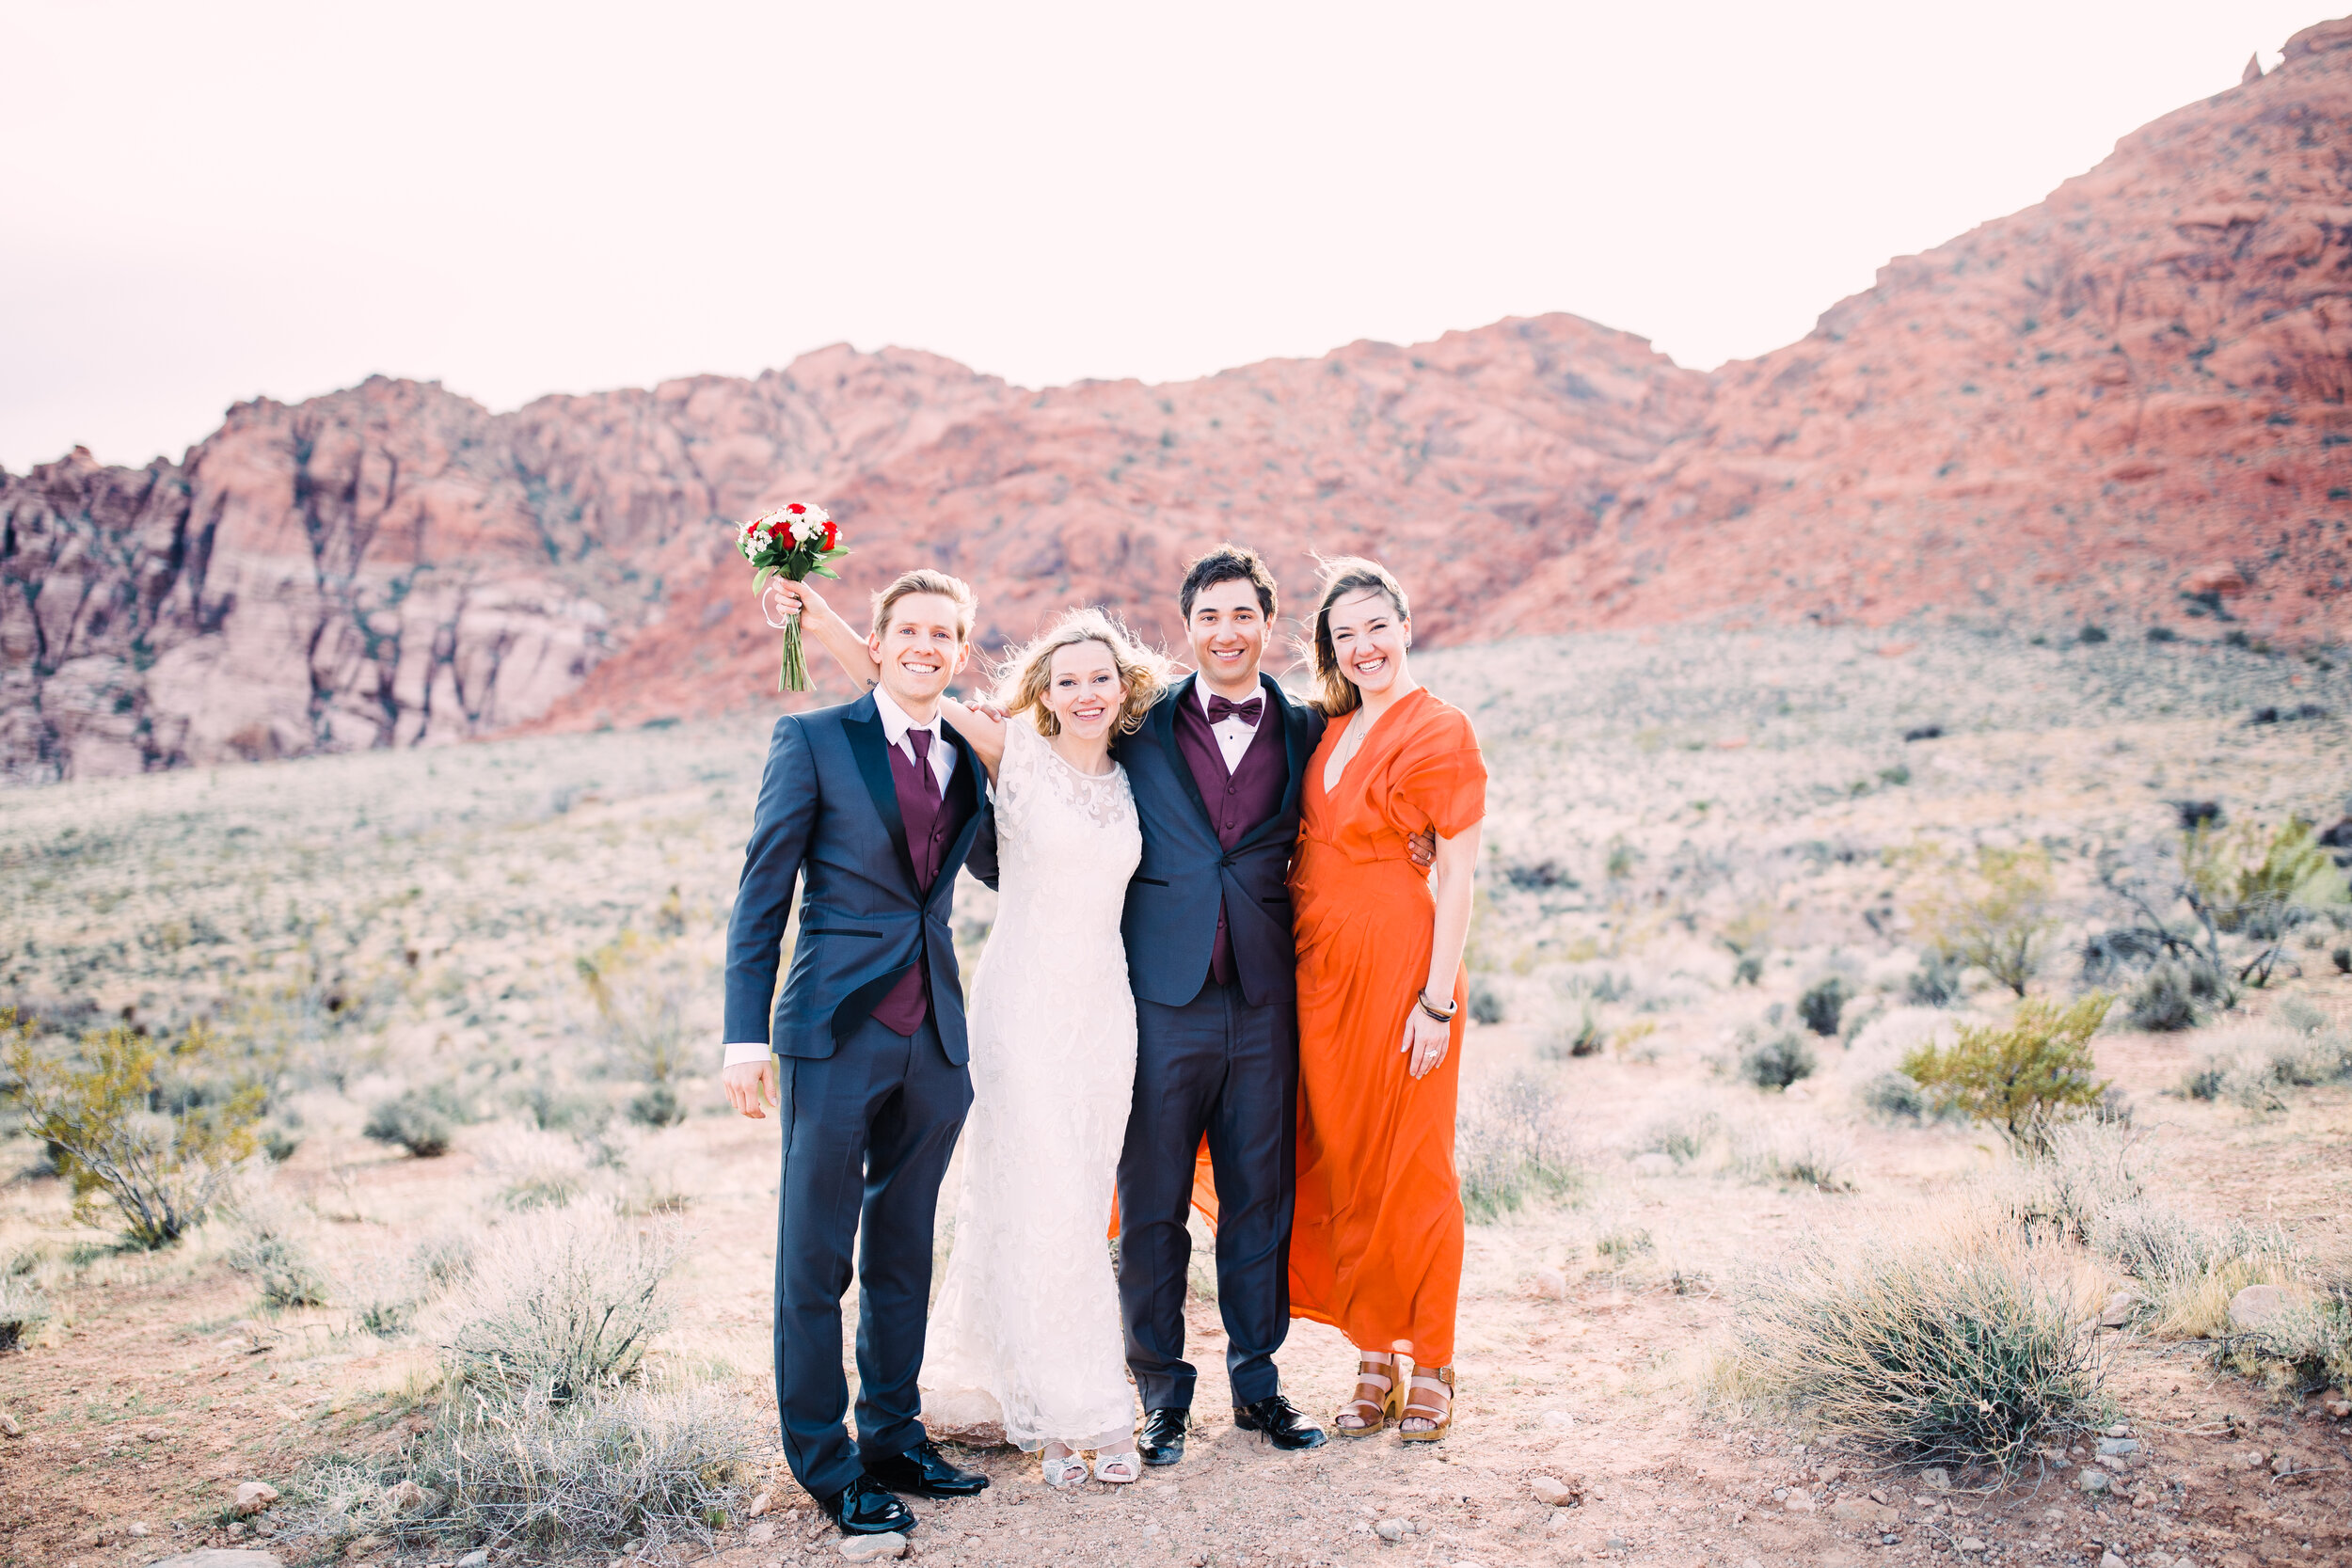 desert wedding photo inspo